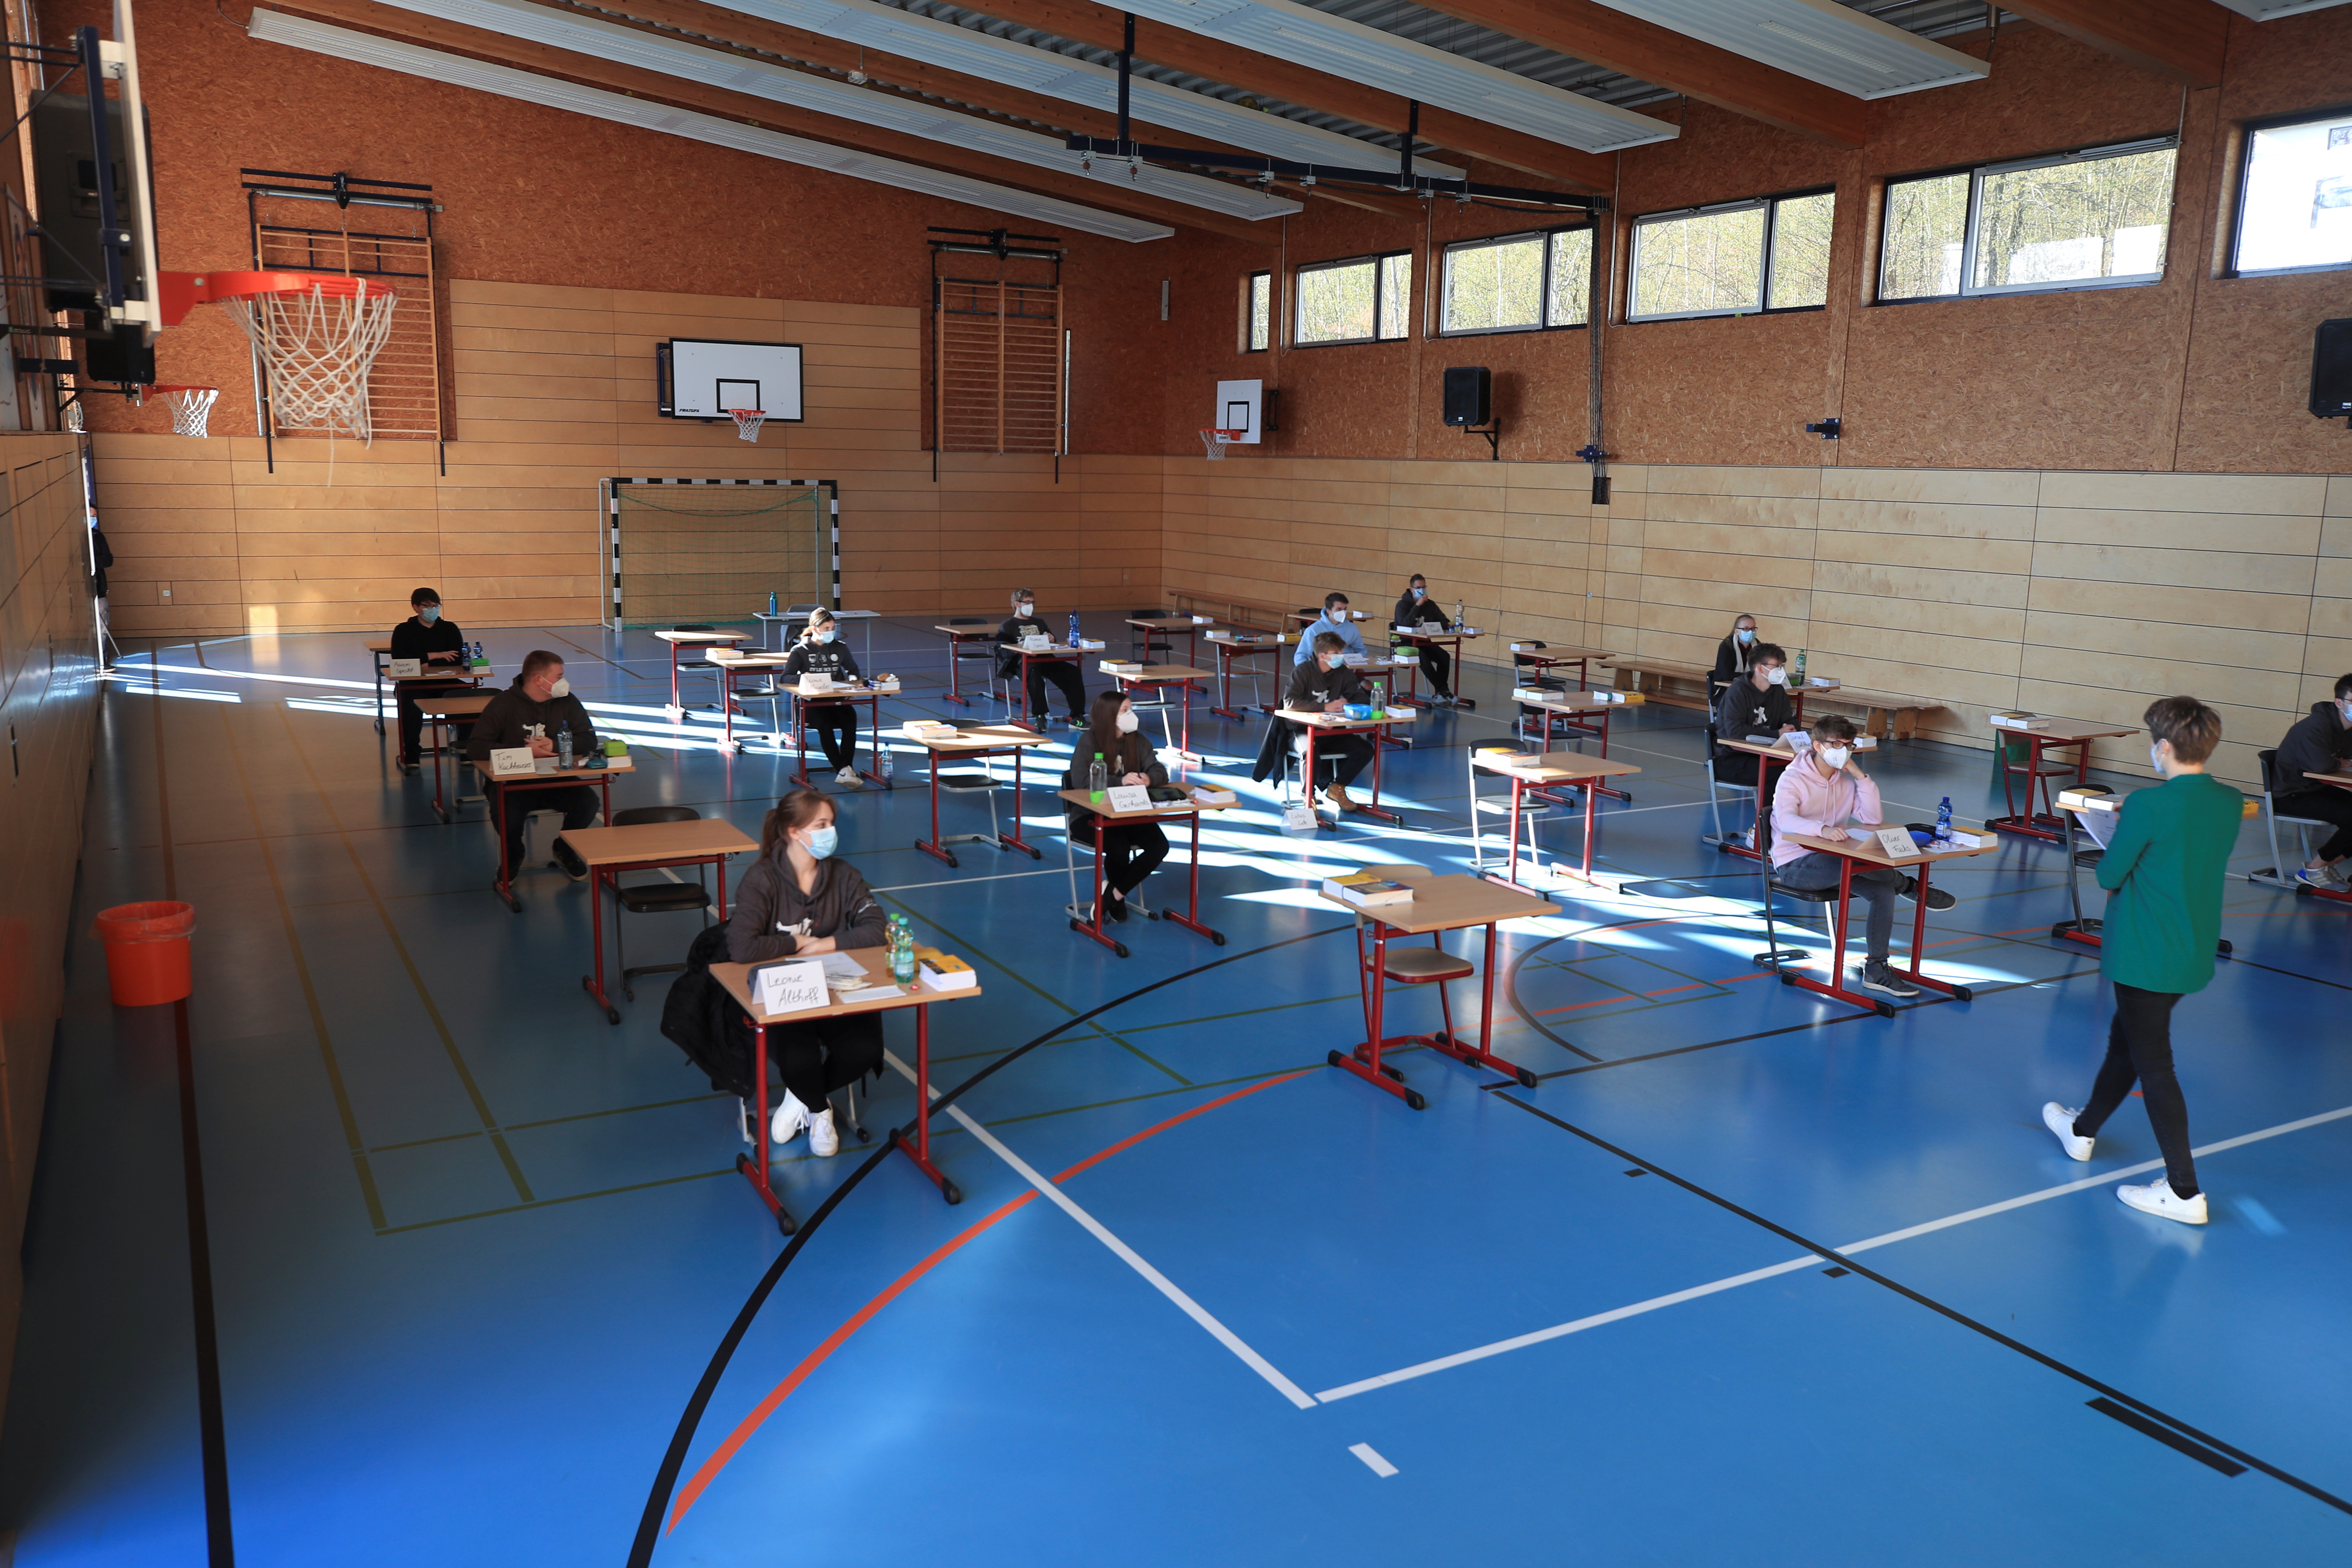 Así rinden los exámenes de graduación de inglés los alumnos de la escuela en Windeck-Herchen, Alemania (REUTERS/Wolfgang Rattay)